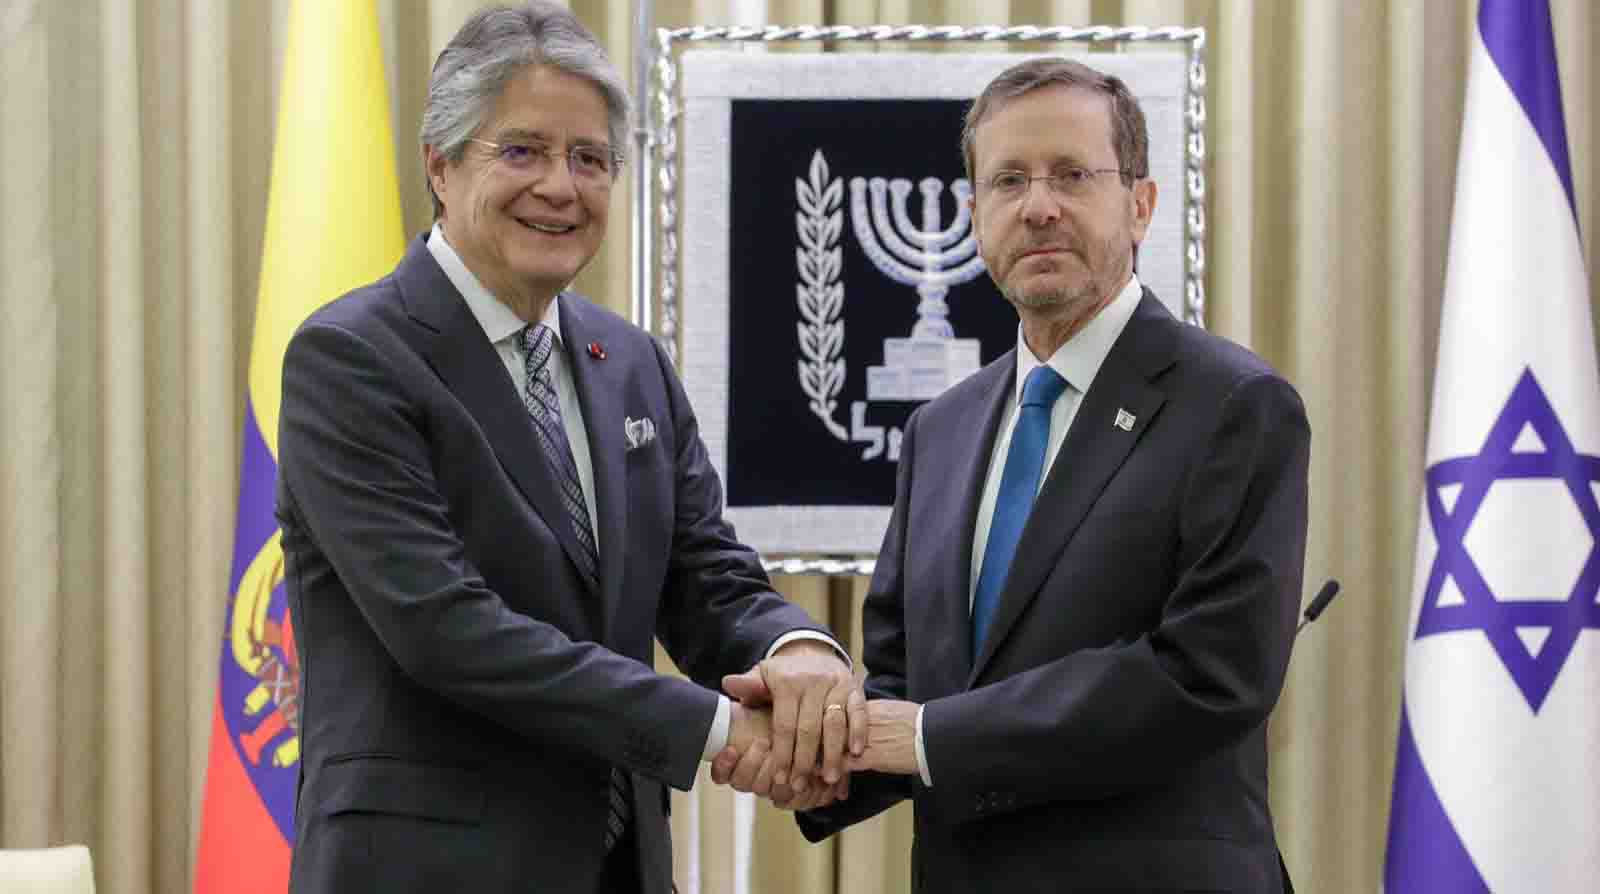 Presidentes de Ecuador e Israel mantuvieron encuentro bilateral, el resultado es la firma de un memorando de entendimiento que dará paso a negociaciones para un Tratado de Libre Comercio. Foto: Twitter de Guillermo Lasso